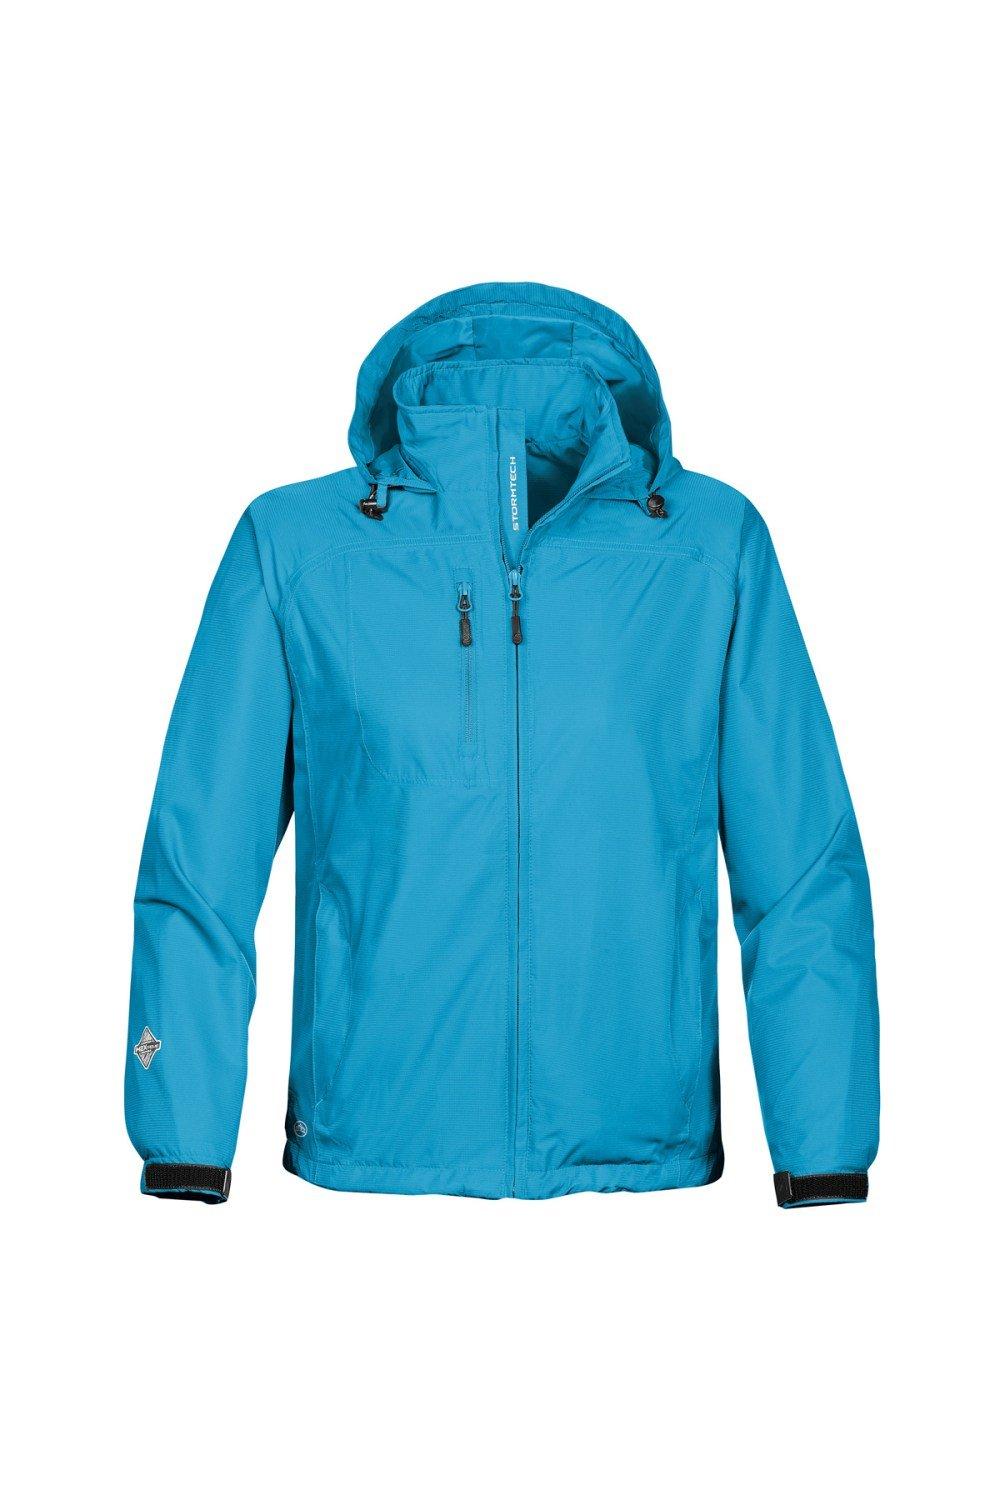 Куртка Stratus Light Shell (водостойкая и дышащая) Stormtech, синий